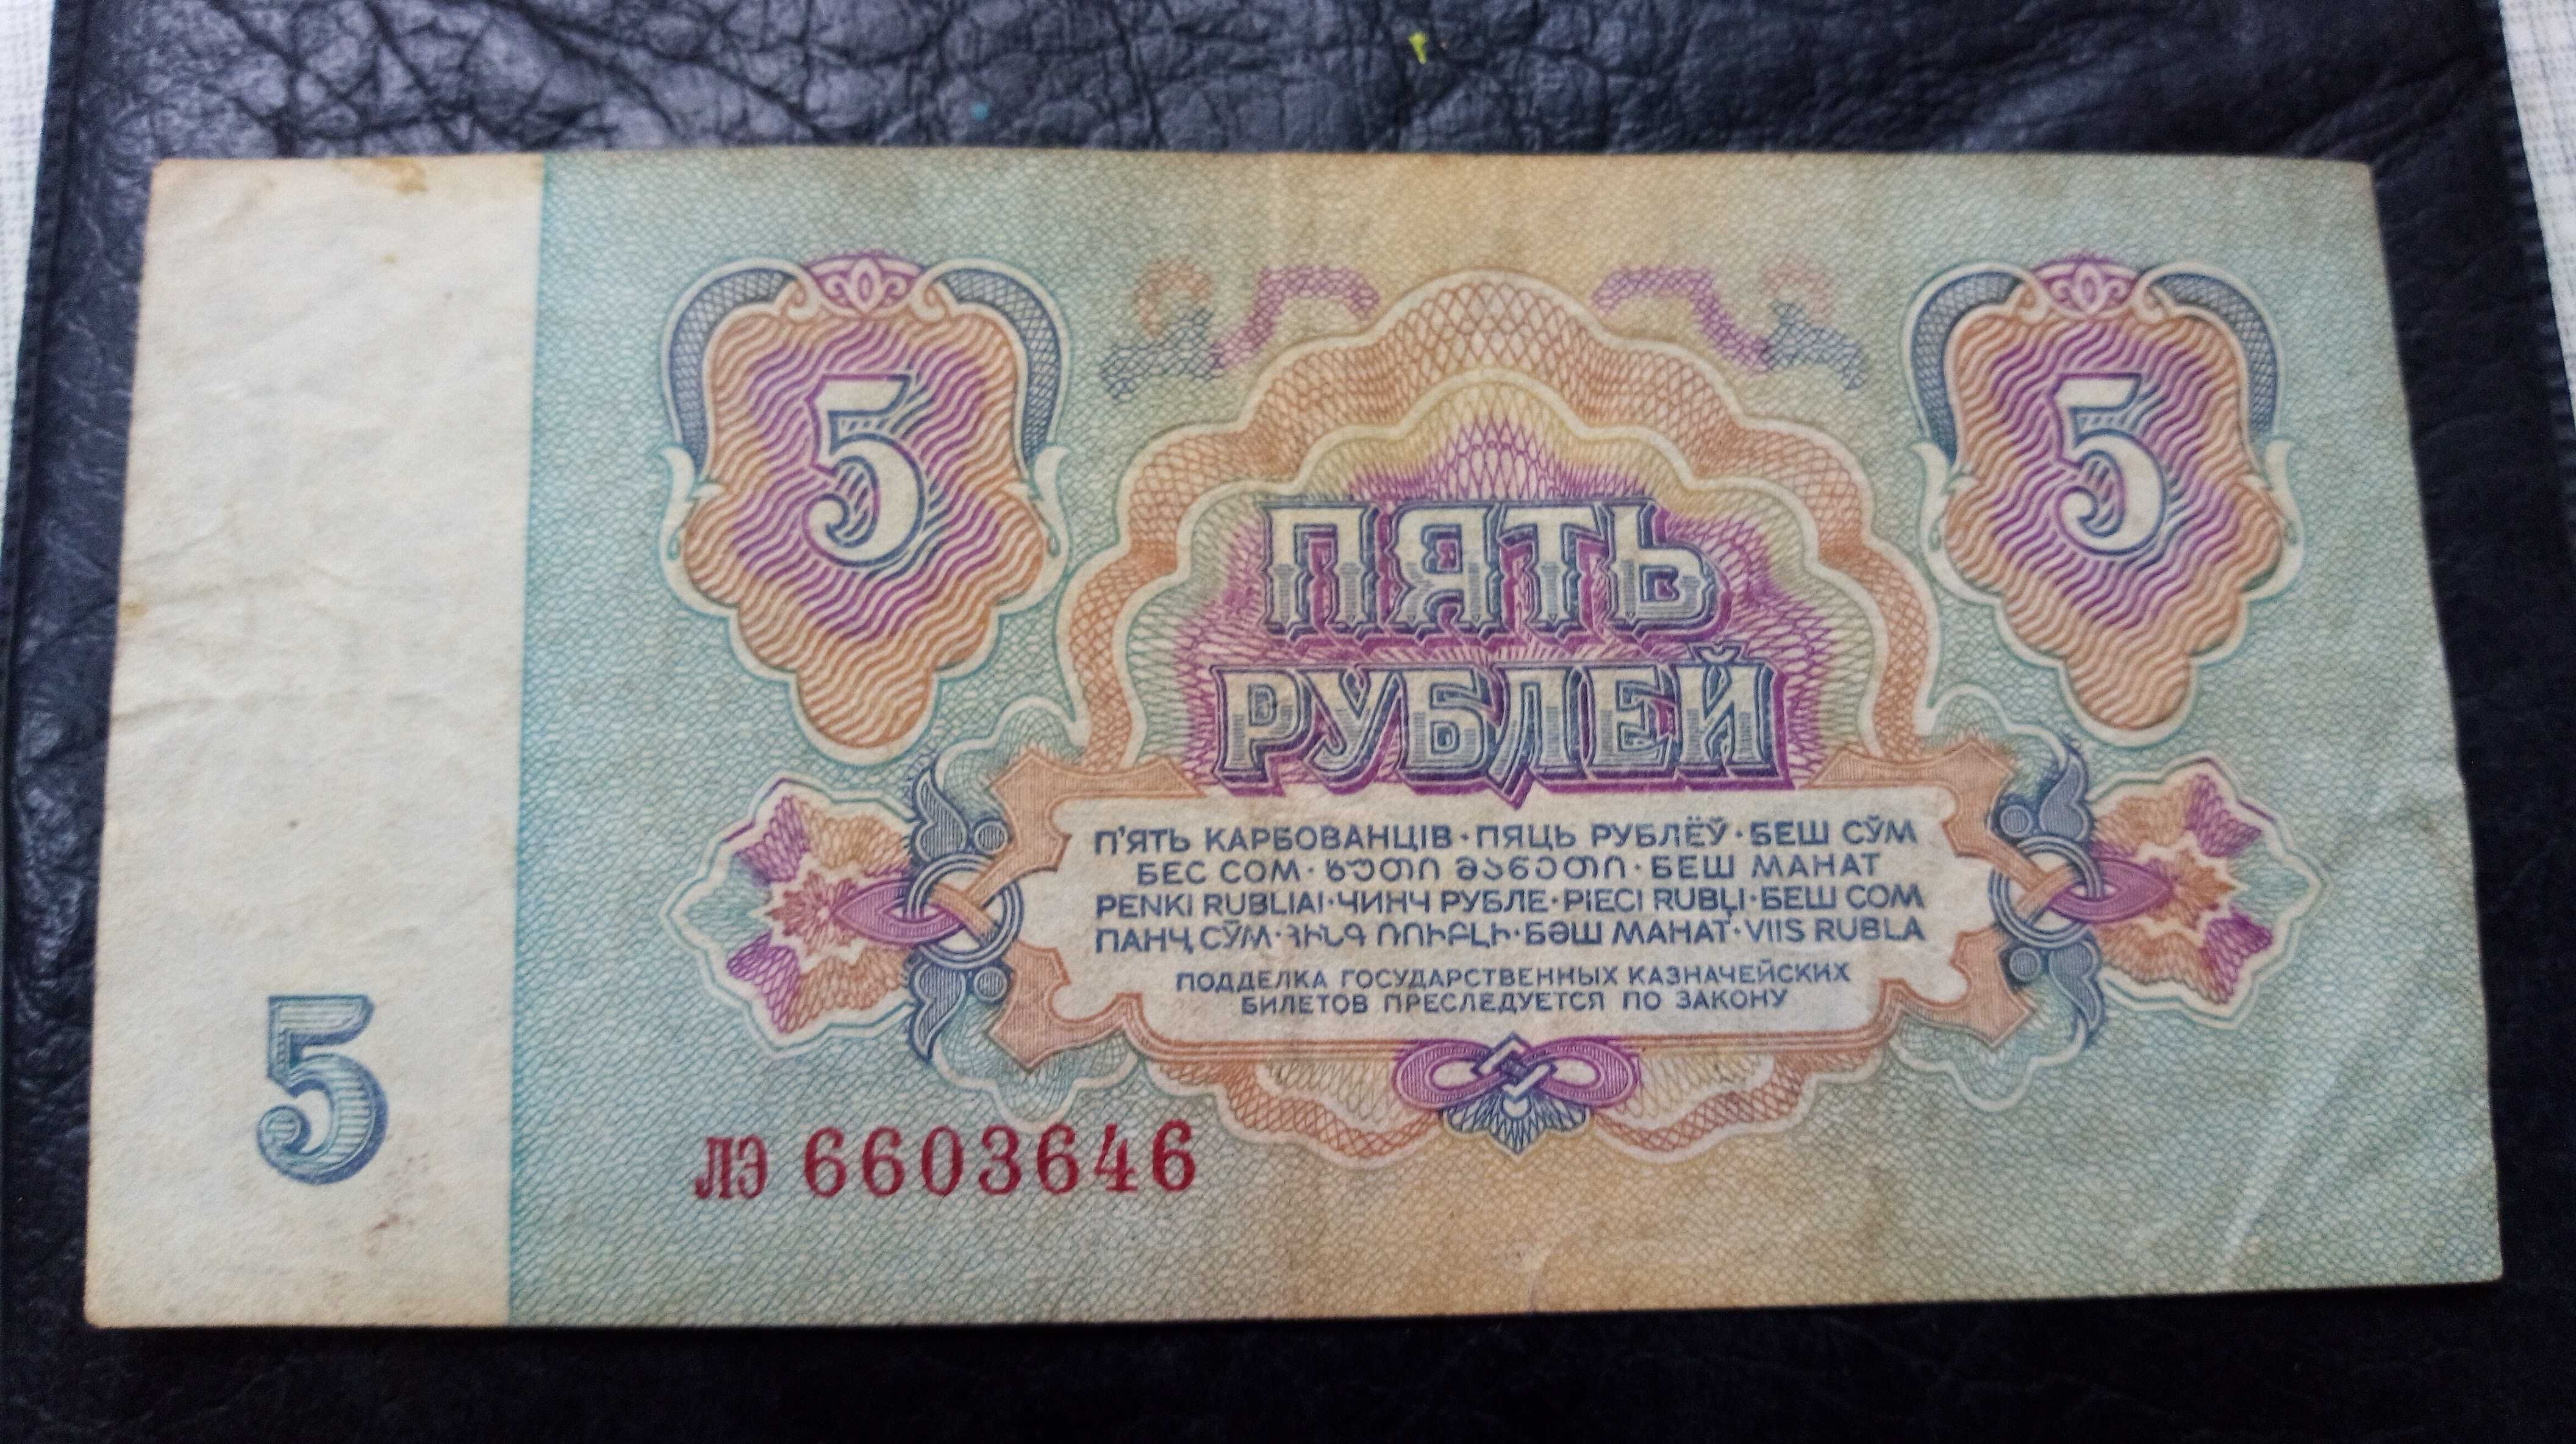 3,5,10 рубли 1961 года в хорошем состоянии